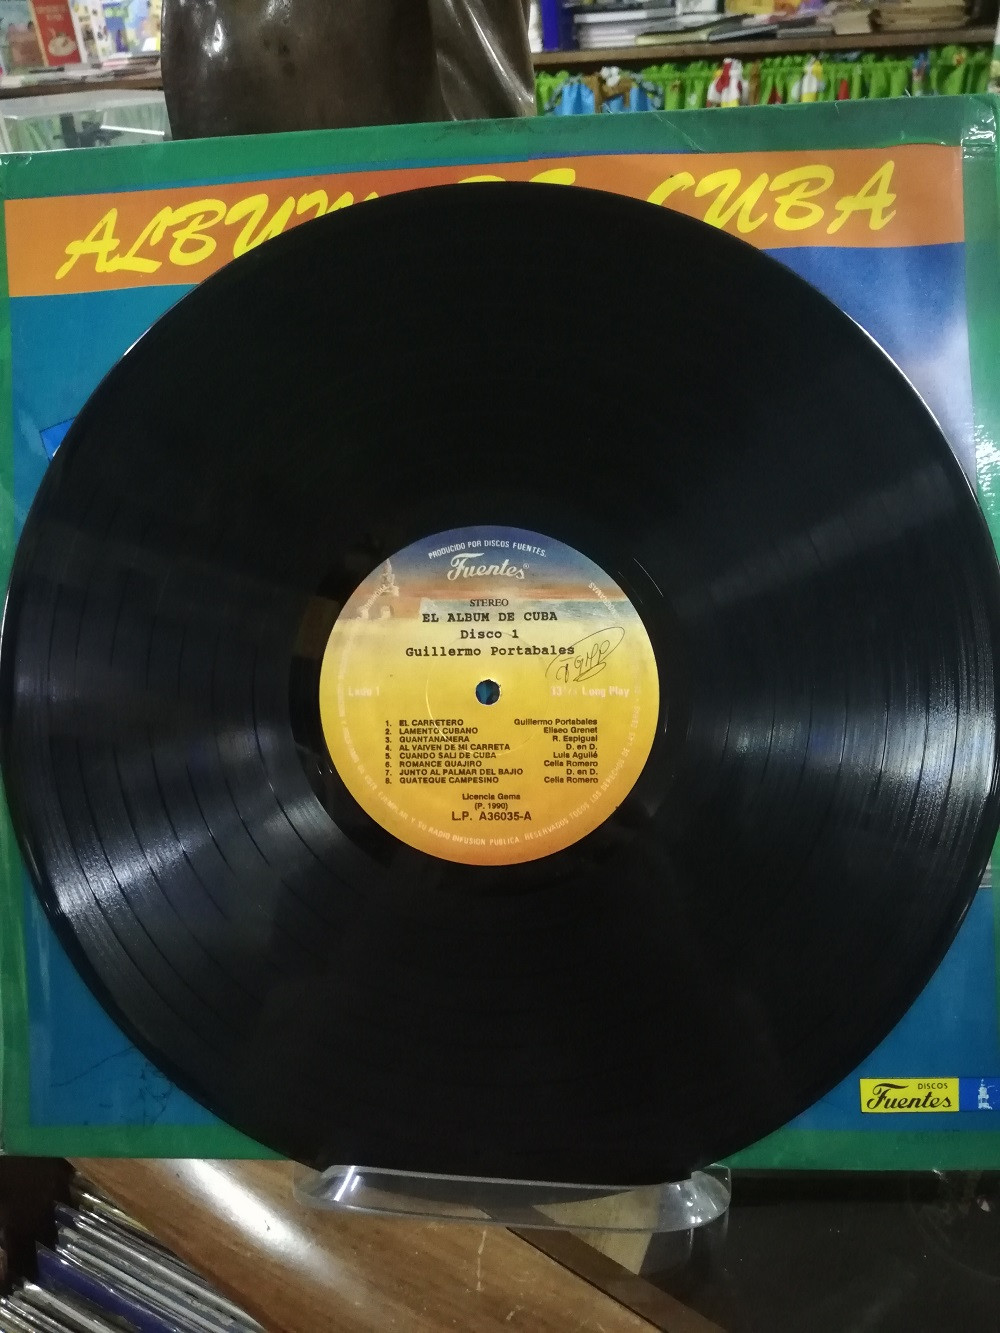 Imagen LP X 3 ALBUM DE CUBA - GUILLERMO PORTABALES/CELINA Y REUTILIO/GUARACHEROS DE ORIENTE 3